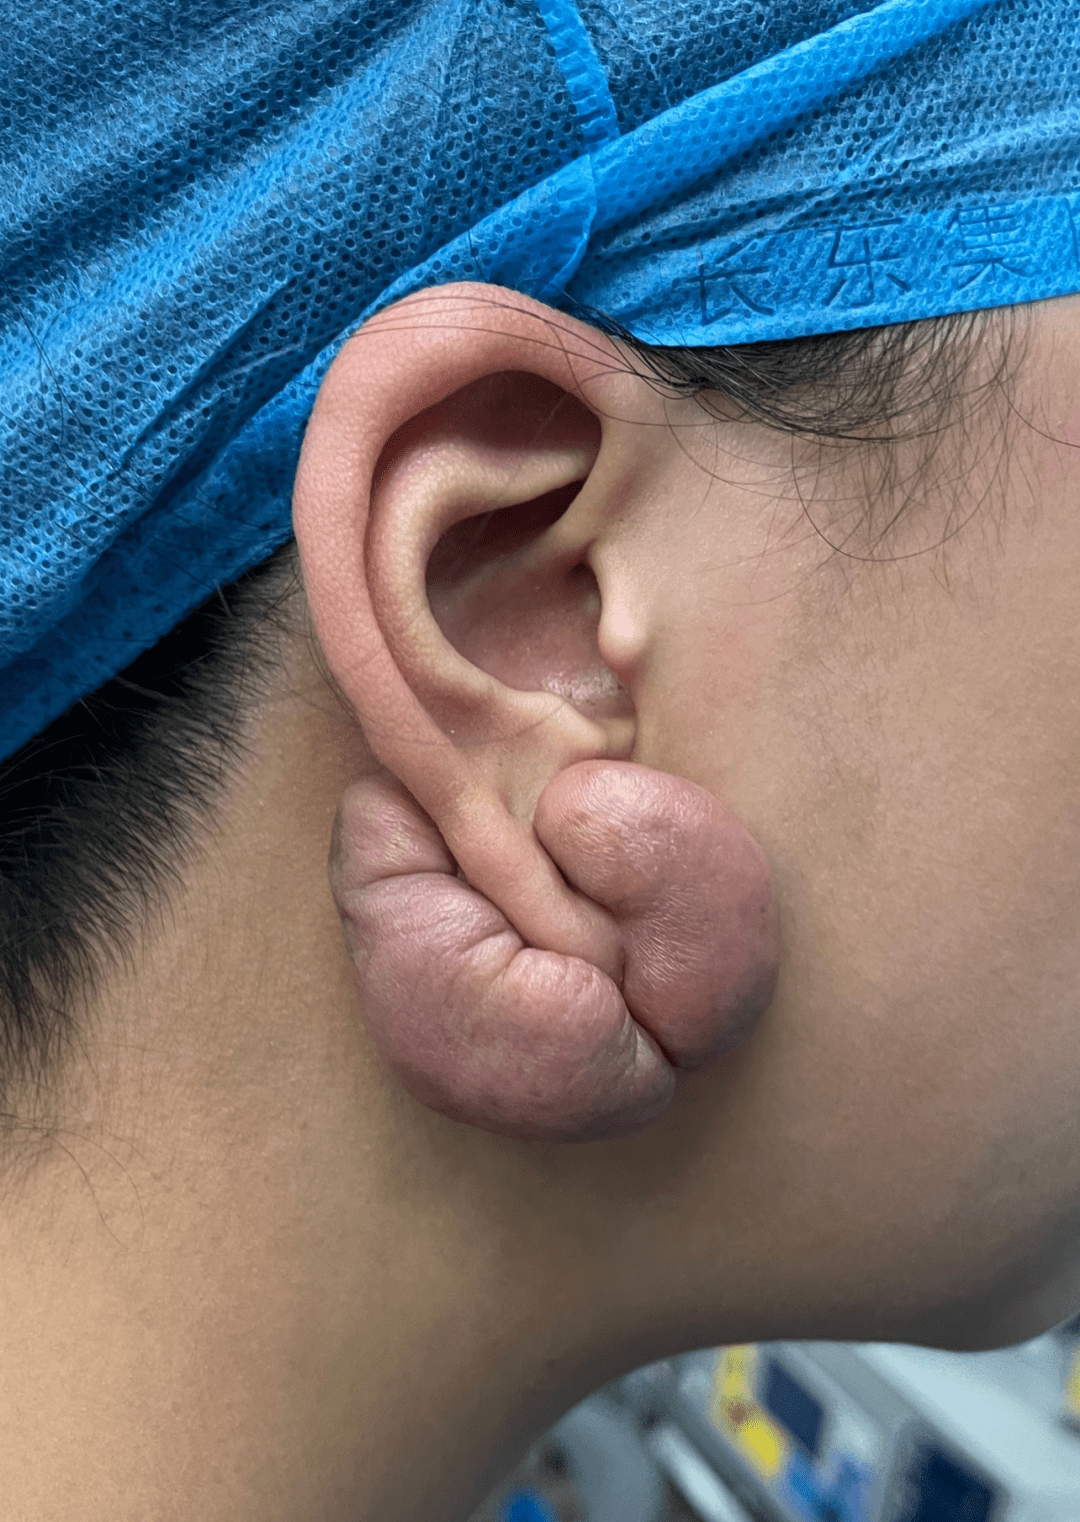 20岁女孩打耳洞长出腰果型肉疙瘩,医生:疤痕体质打耳洞要慎重